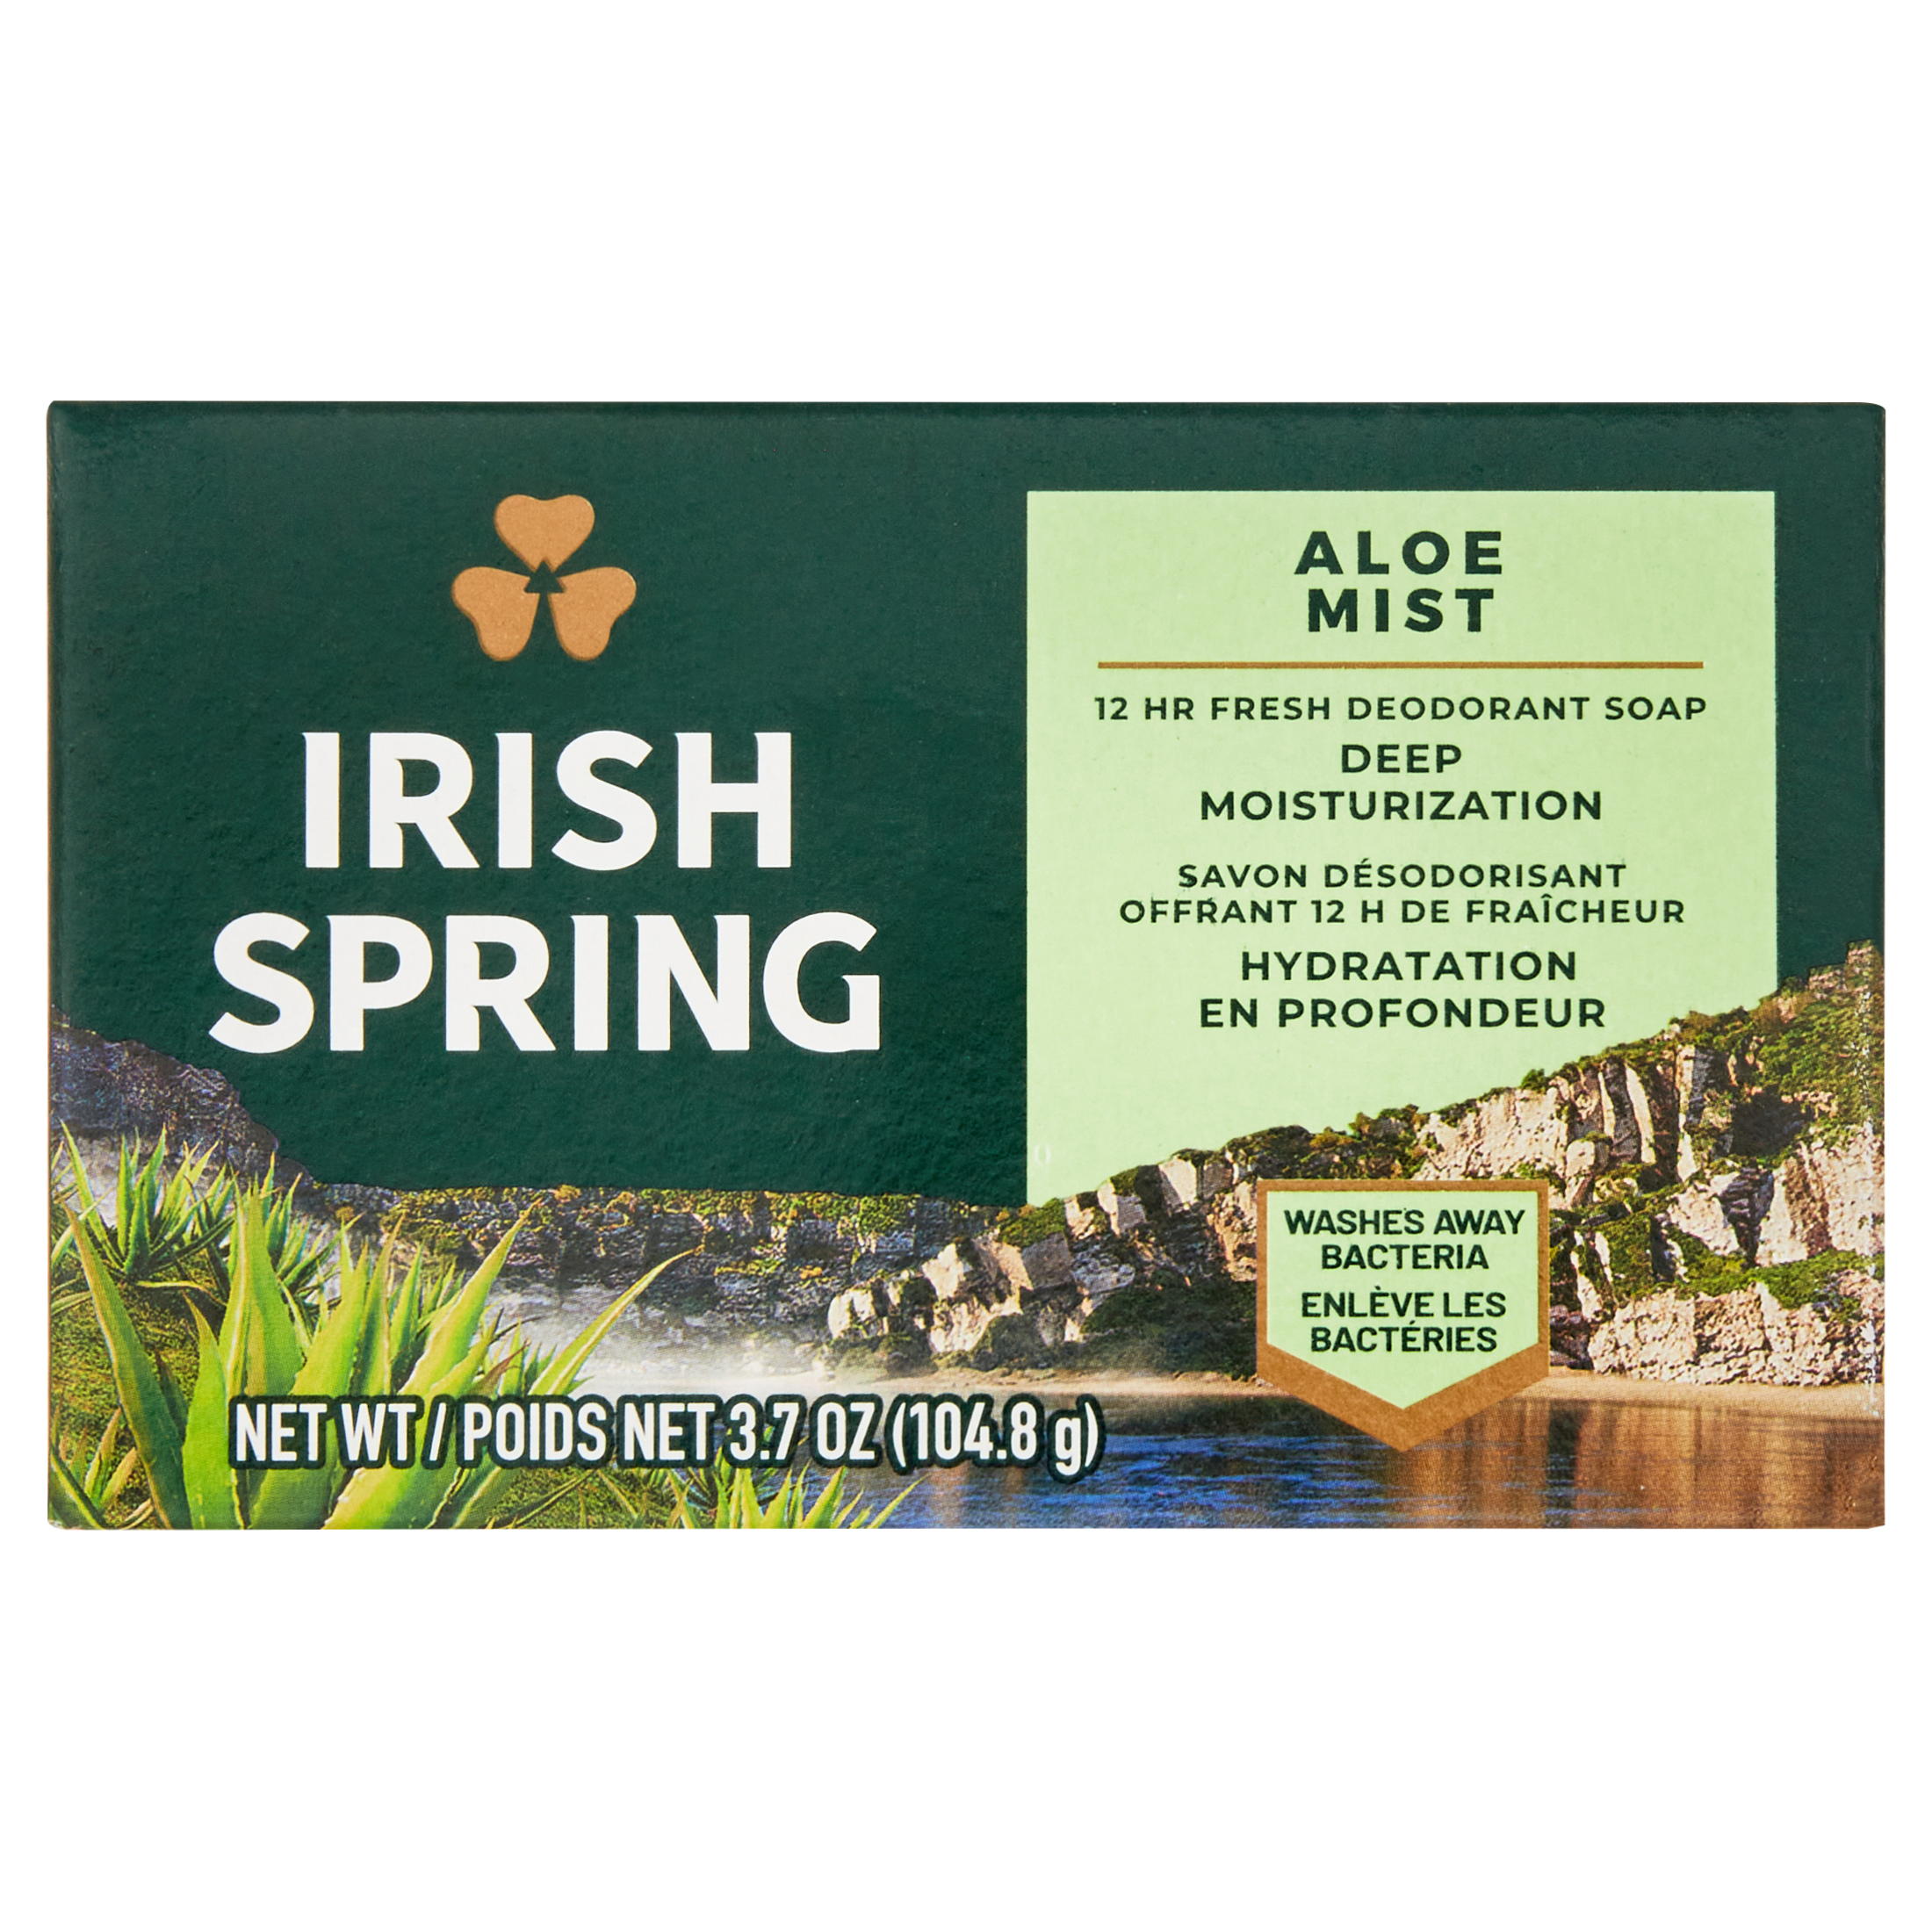 Irish Spring Aloe Mist Deodorant Bar Soap for Men, Feel Fresh All Day, 3.7 oz, 12 Pack - image 22 of 23